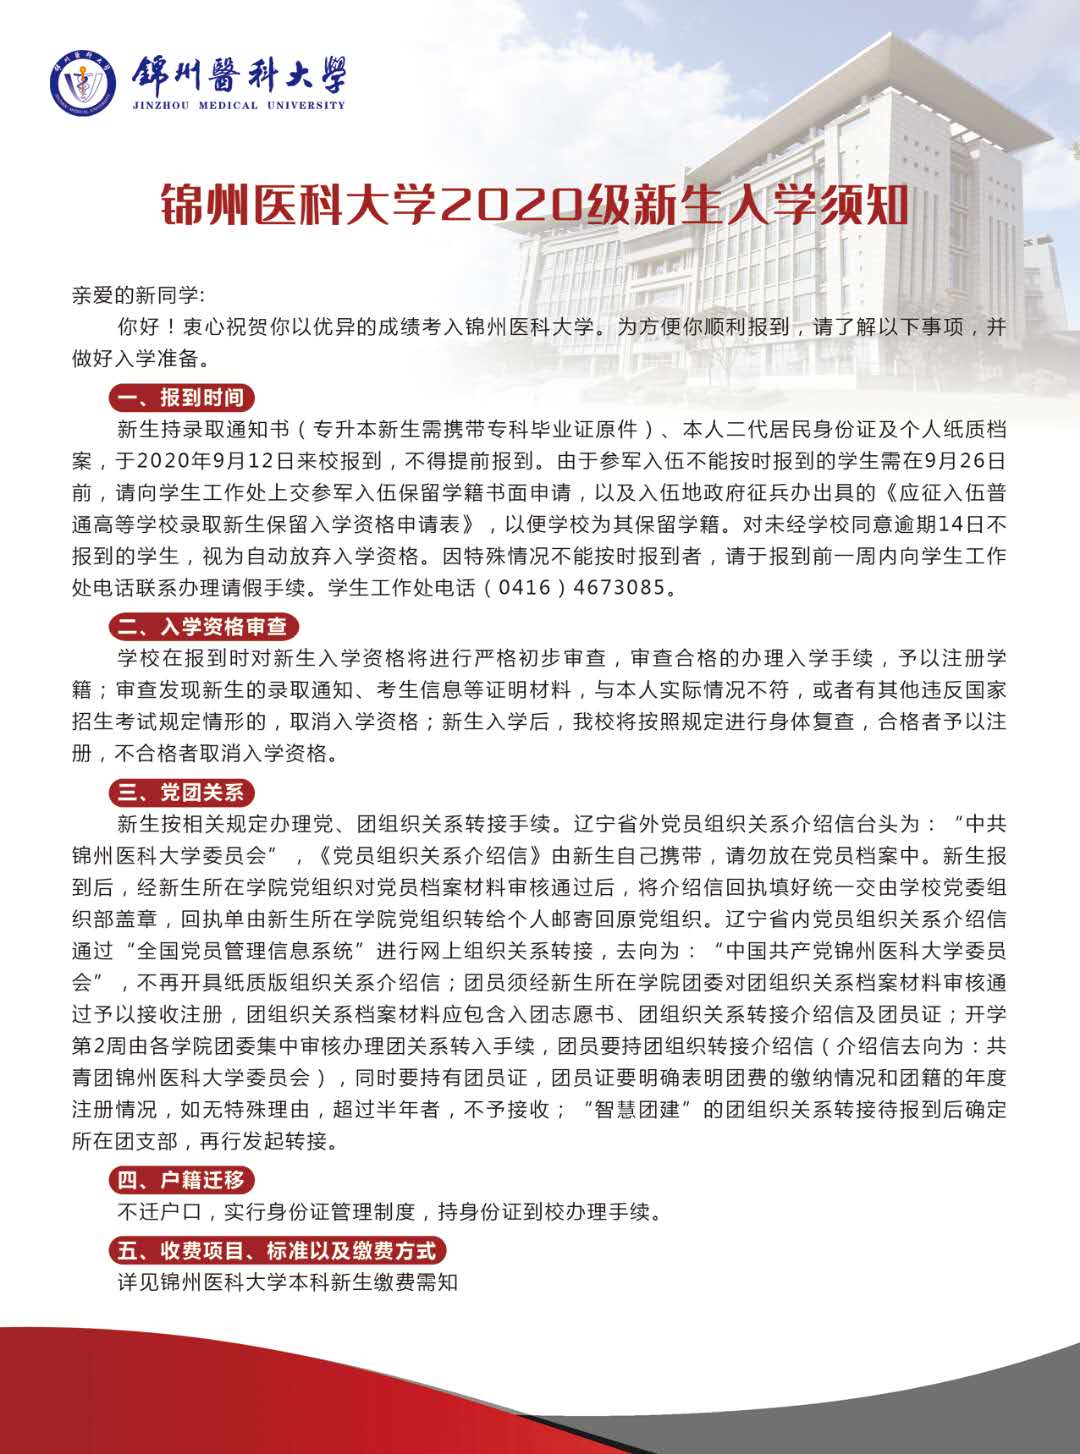 锦州医科大学2020级新生入学须知开学时间